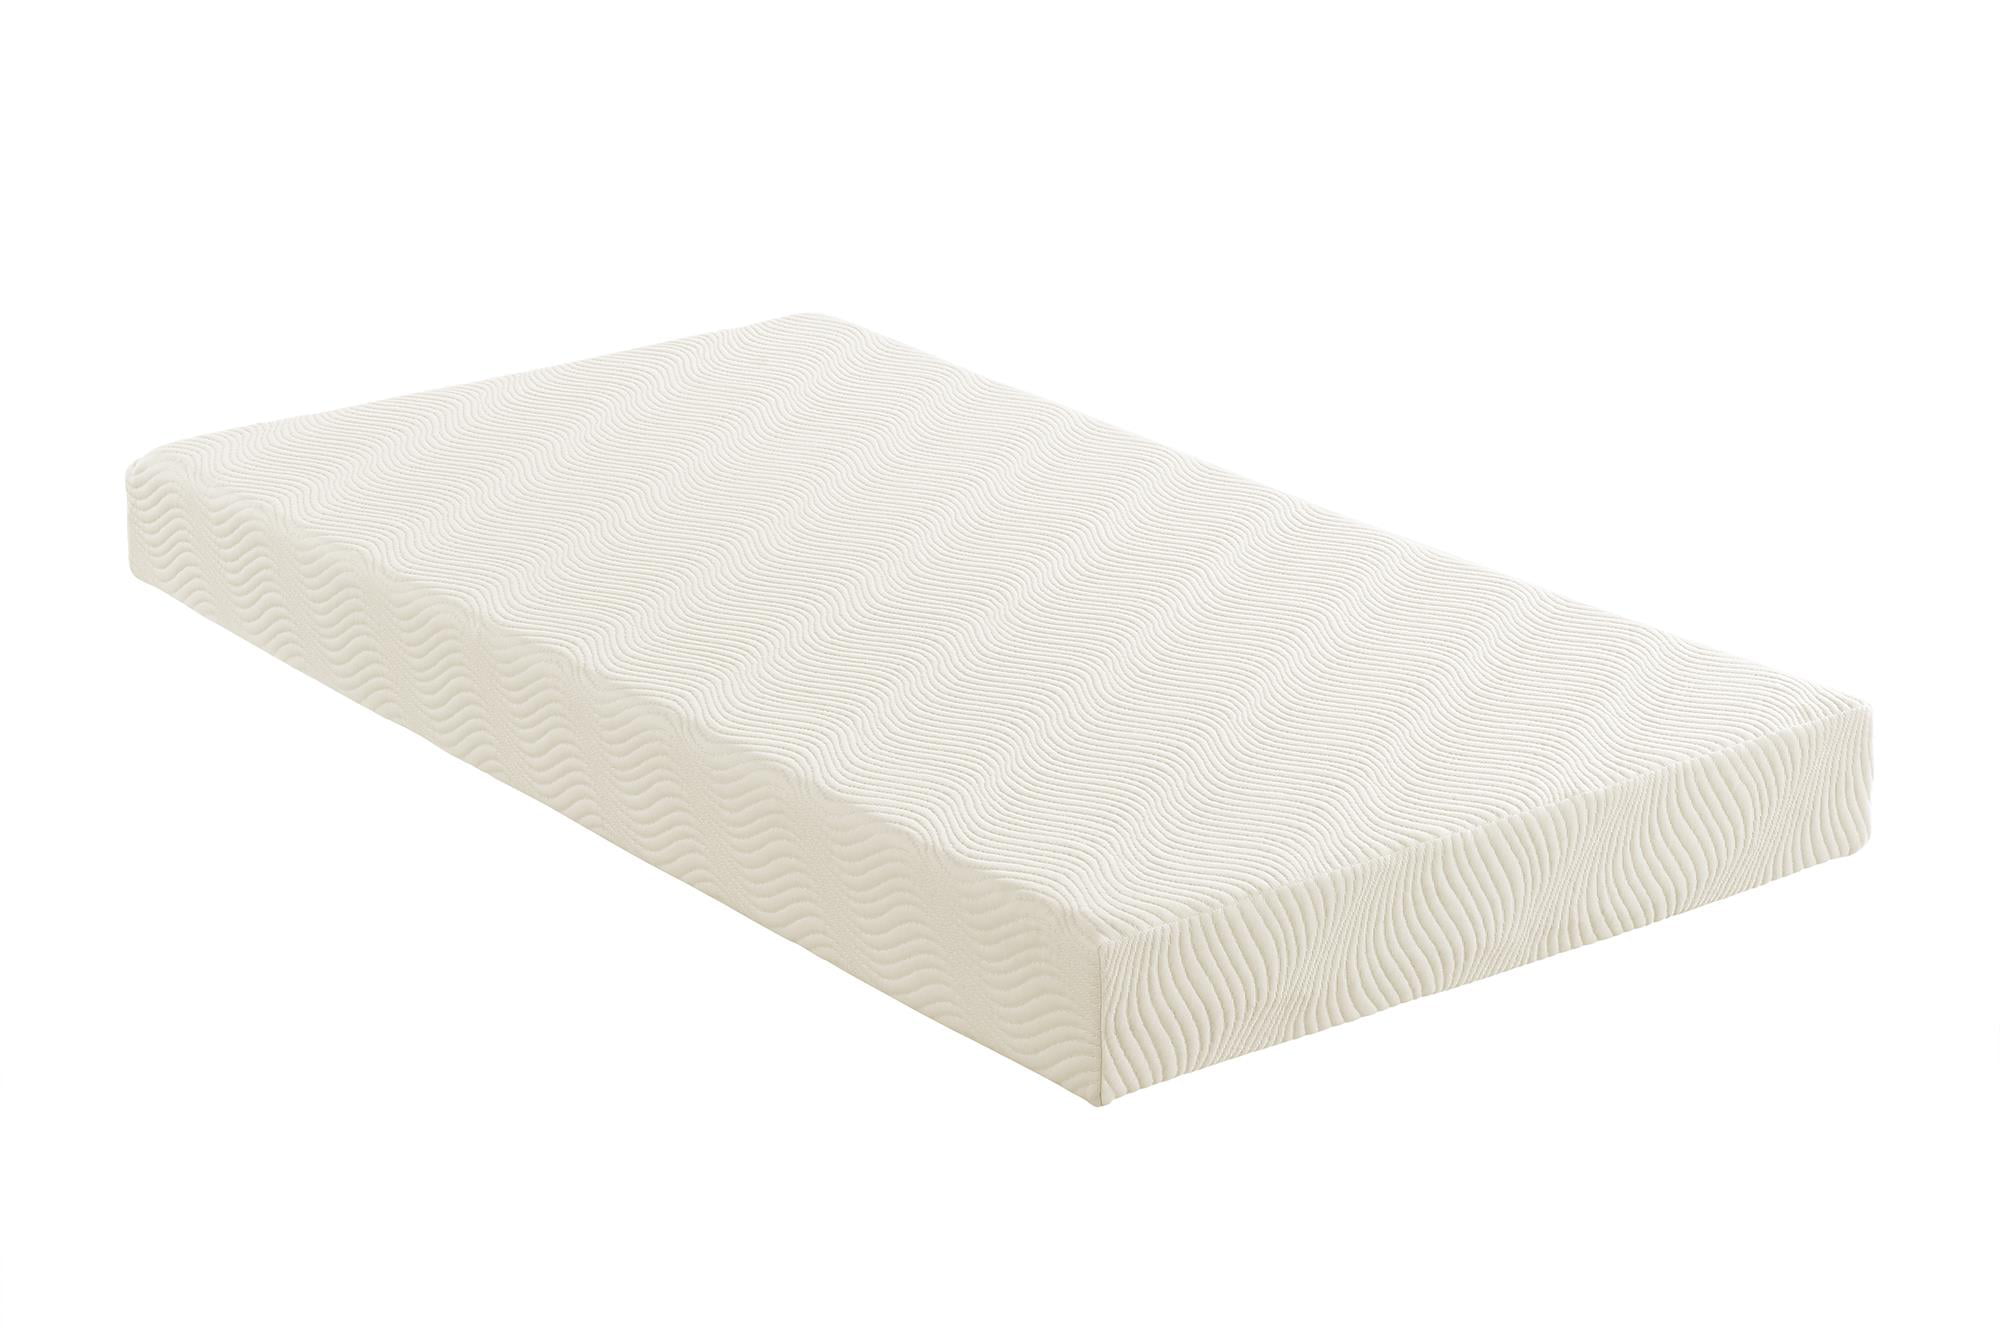 memkry foam bunk bed mattress